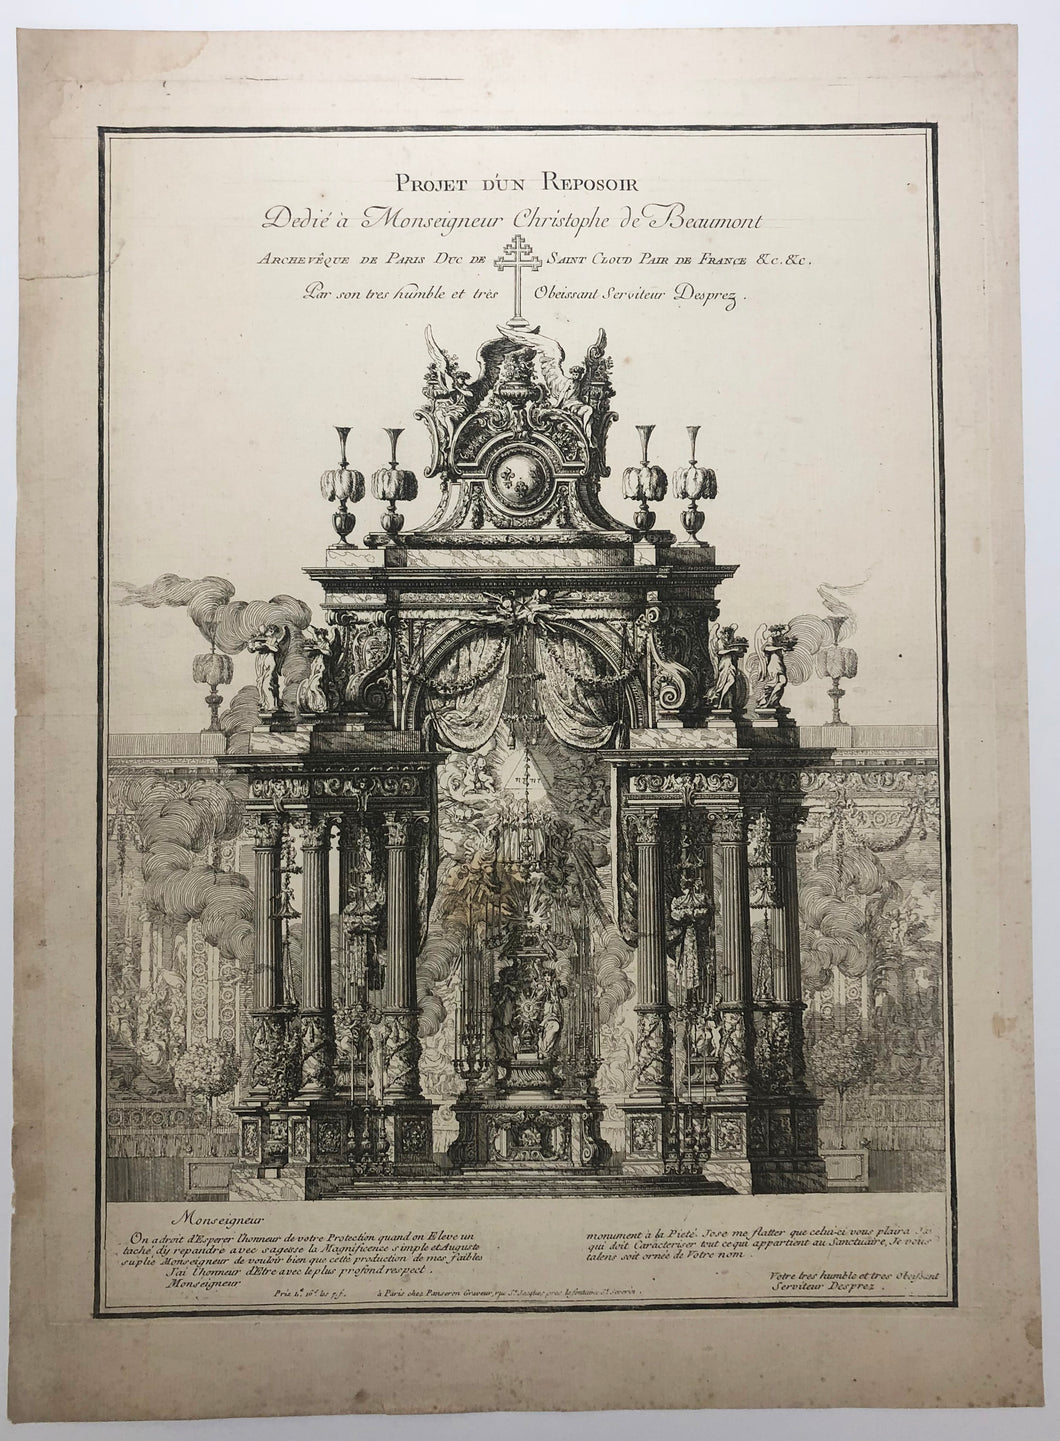 Projet d'un Reposoir, Dedié à Monseigneur Christophe de Beaumont, Archevêque de Paris Duc de Saint Cloud Pair de France &c.  1770.